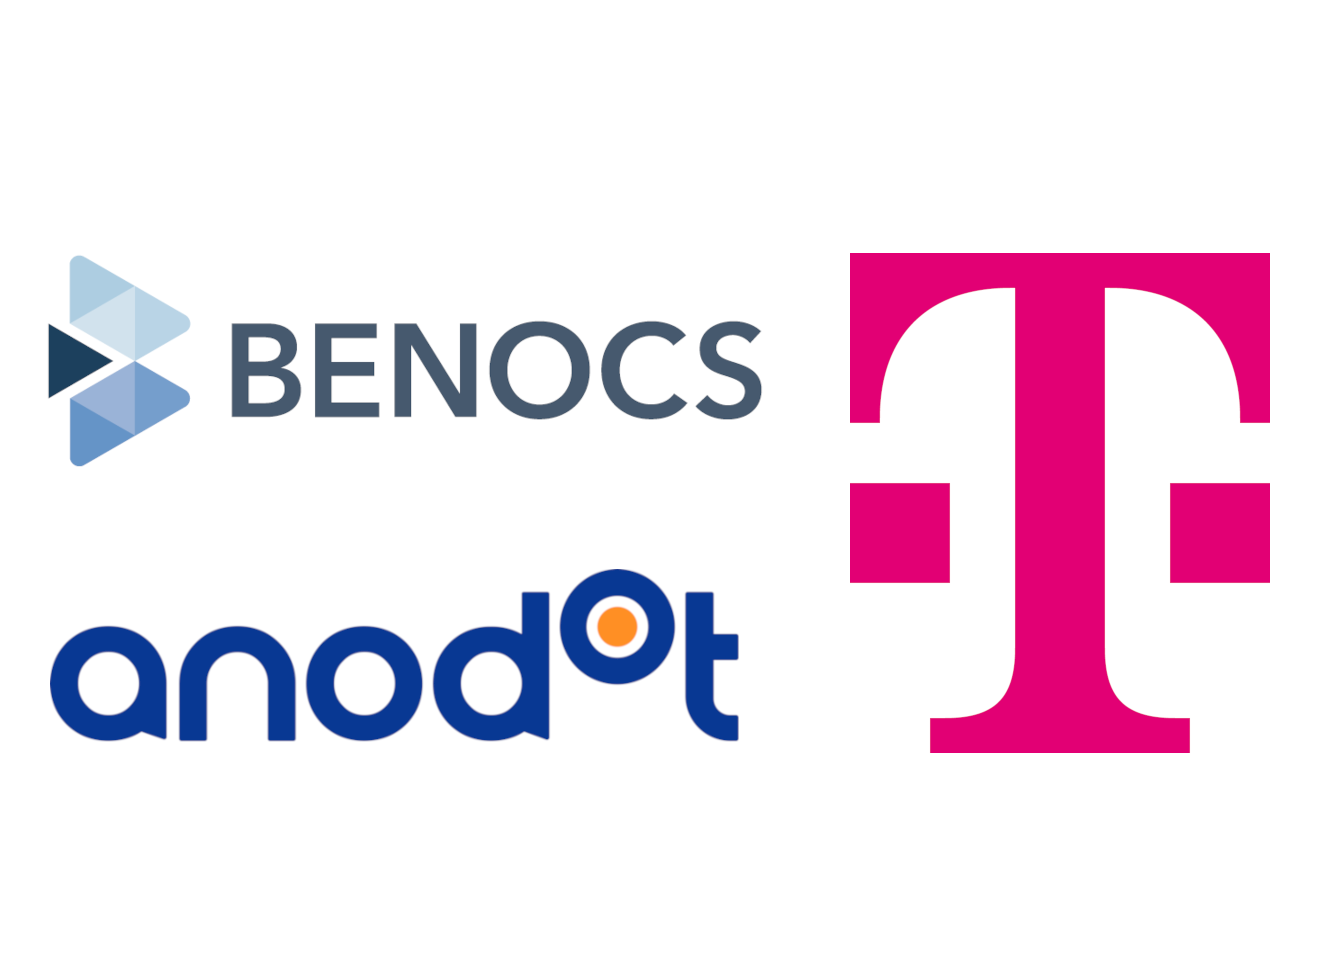 BENOCS logo, Anodot logo, Deutsche Telekom logo